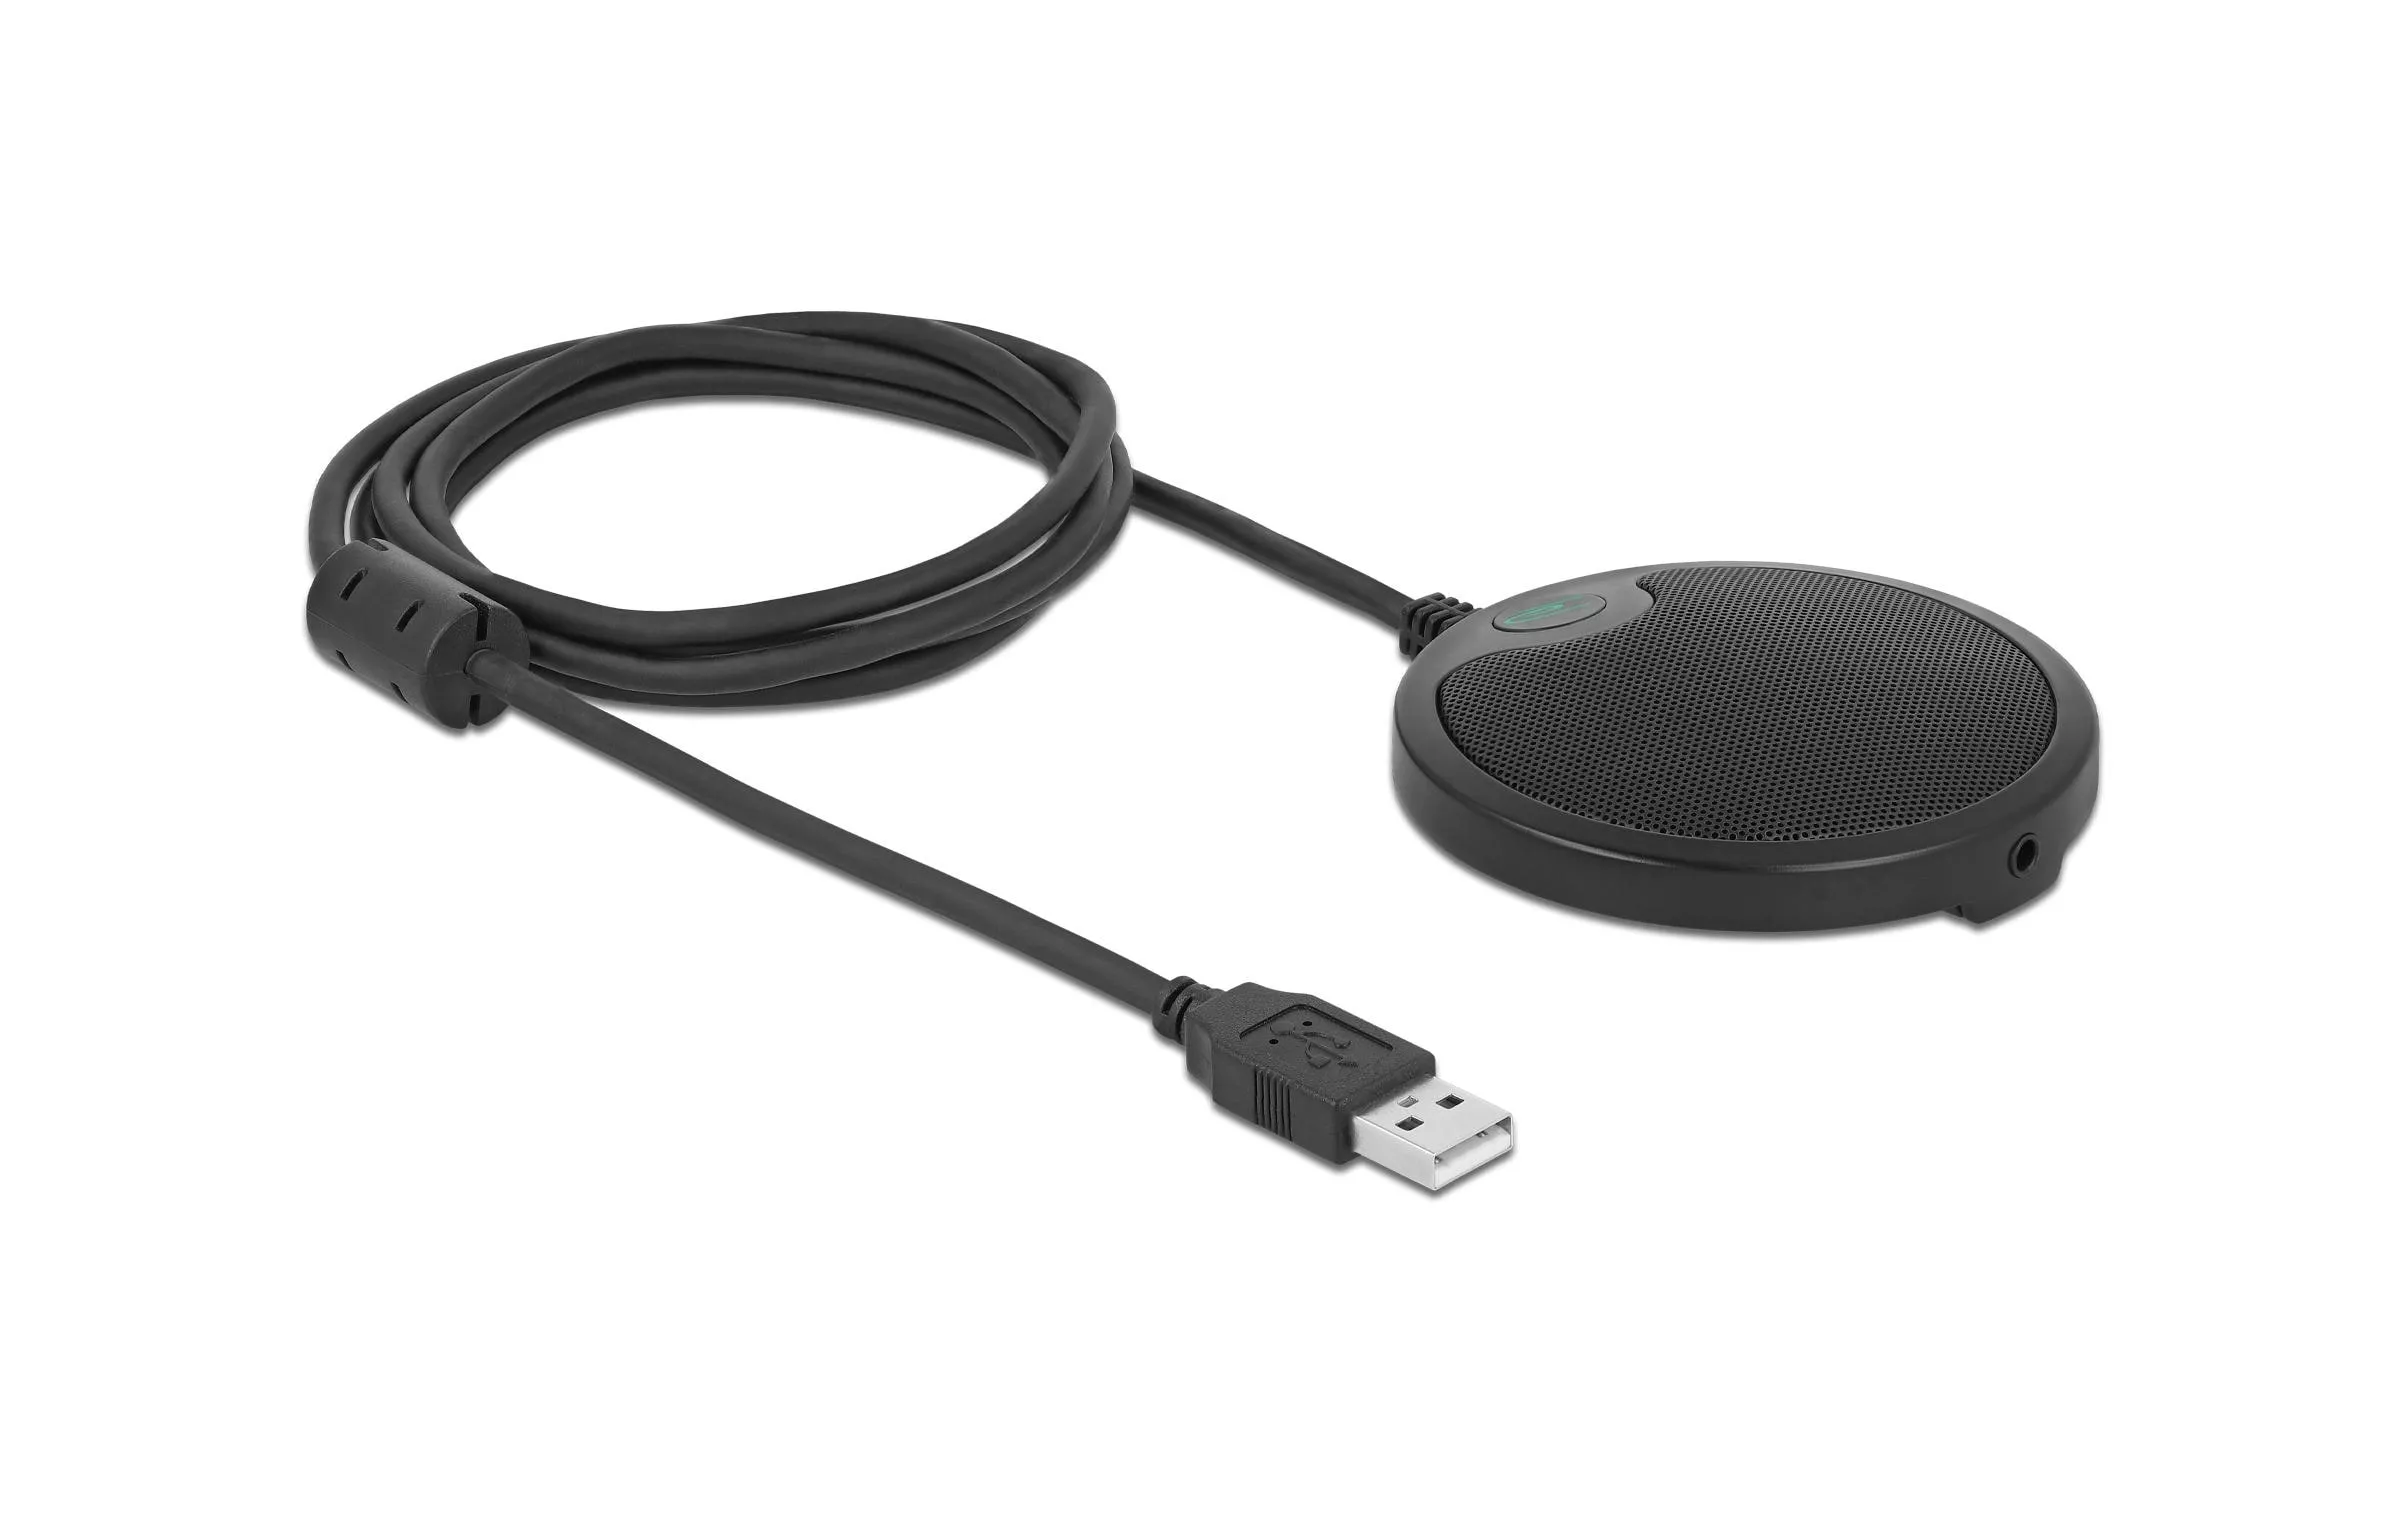 Kondensatormikrofon USB, für Konferenzen, Omnidirektional